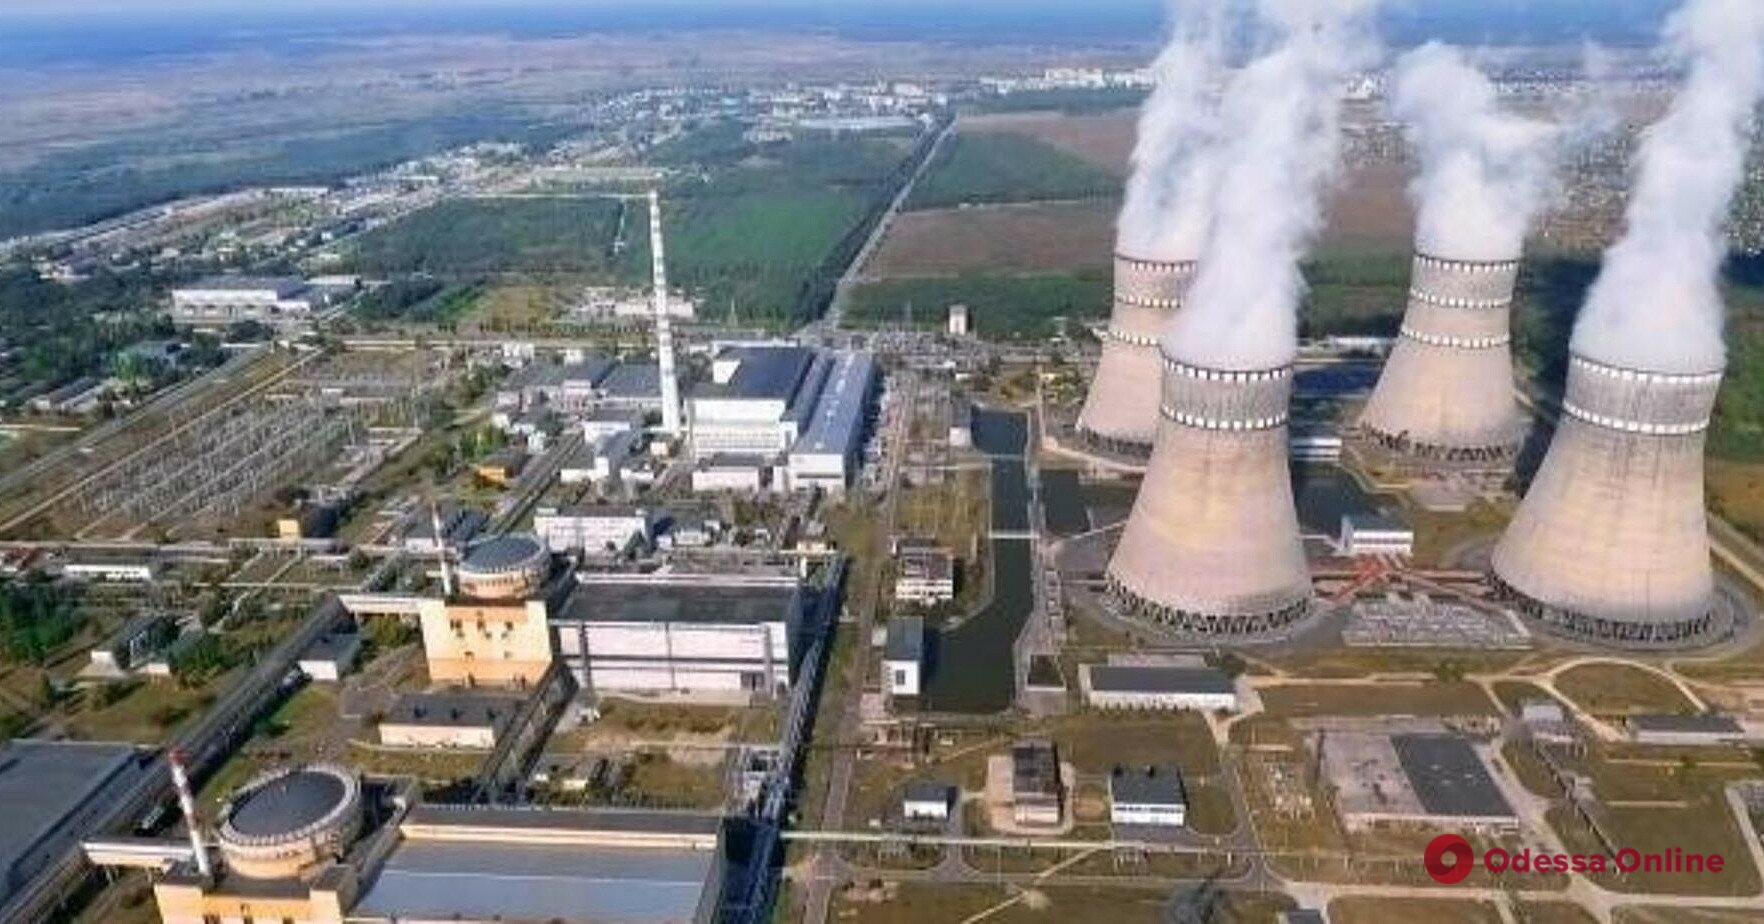 В Украине вновь заработали два блока на АЭС, поэтому дефицит электрогенерации снижается, — министр энергетики